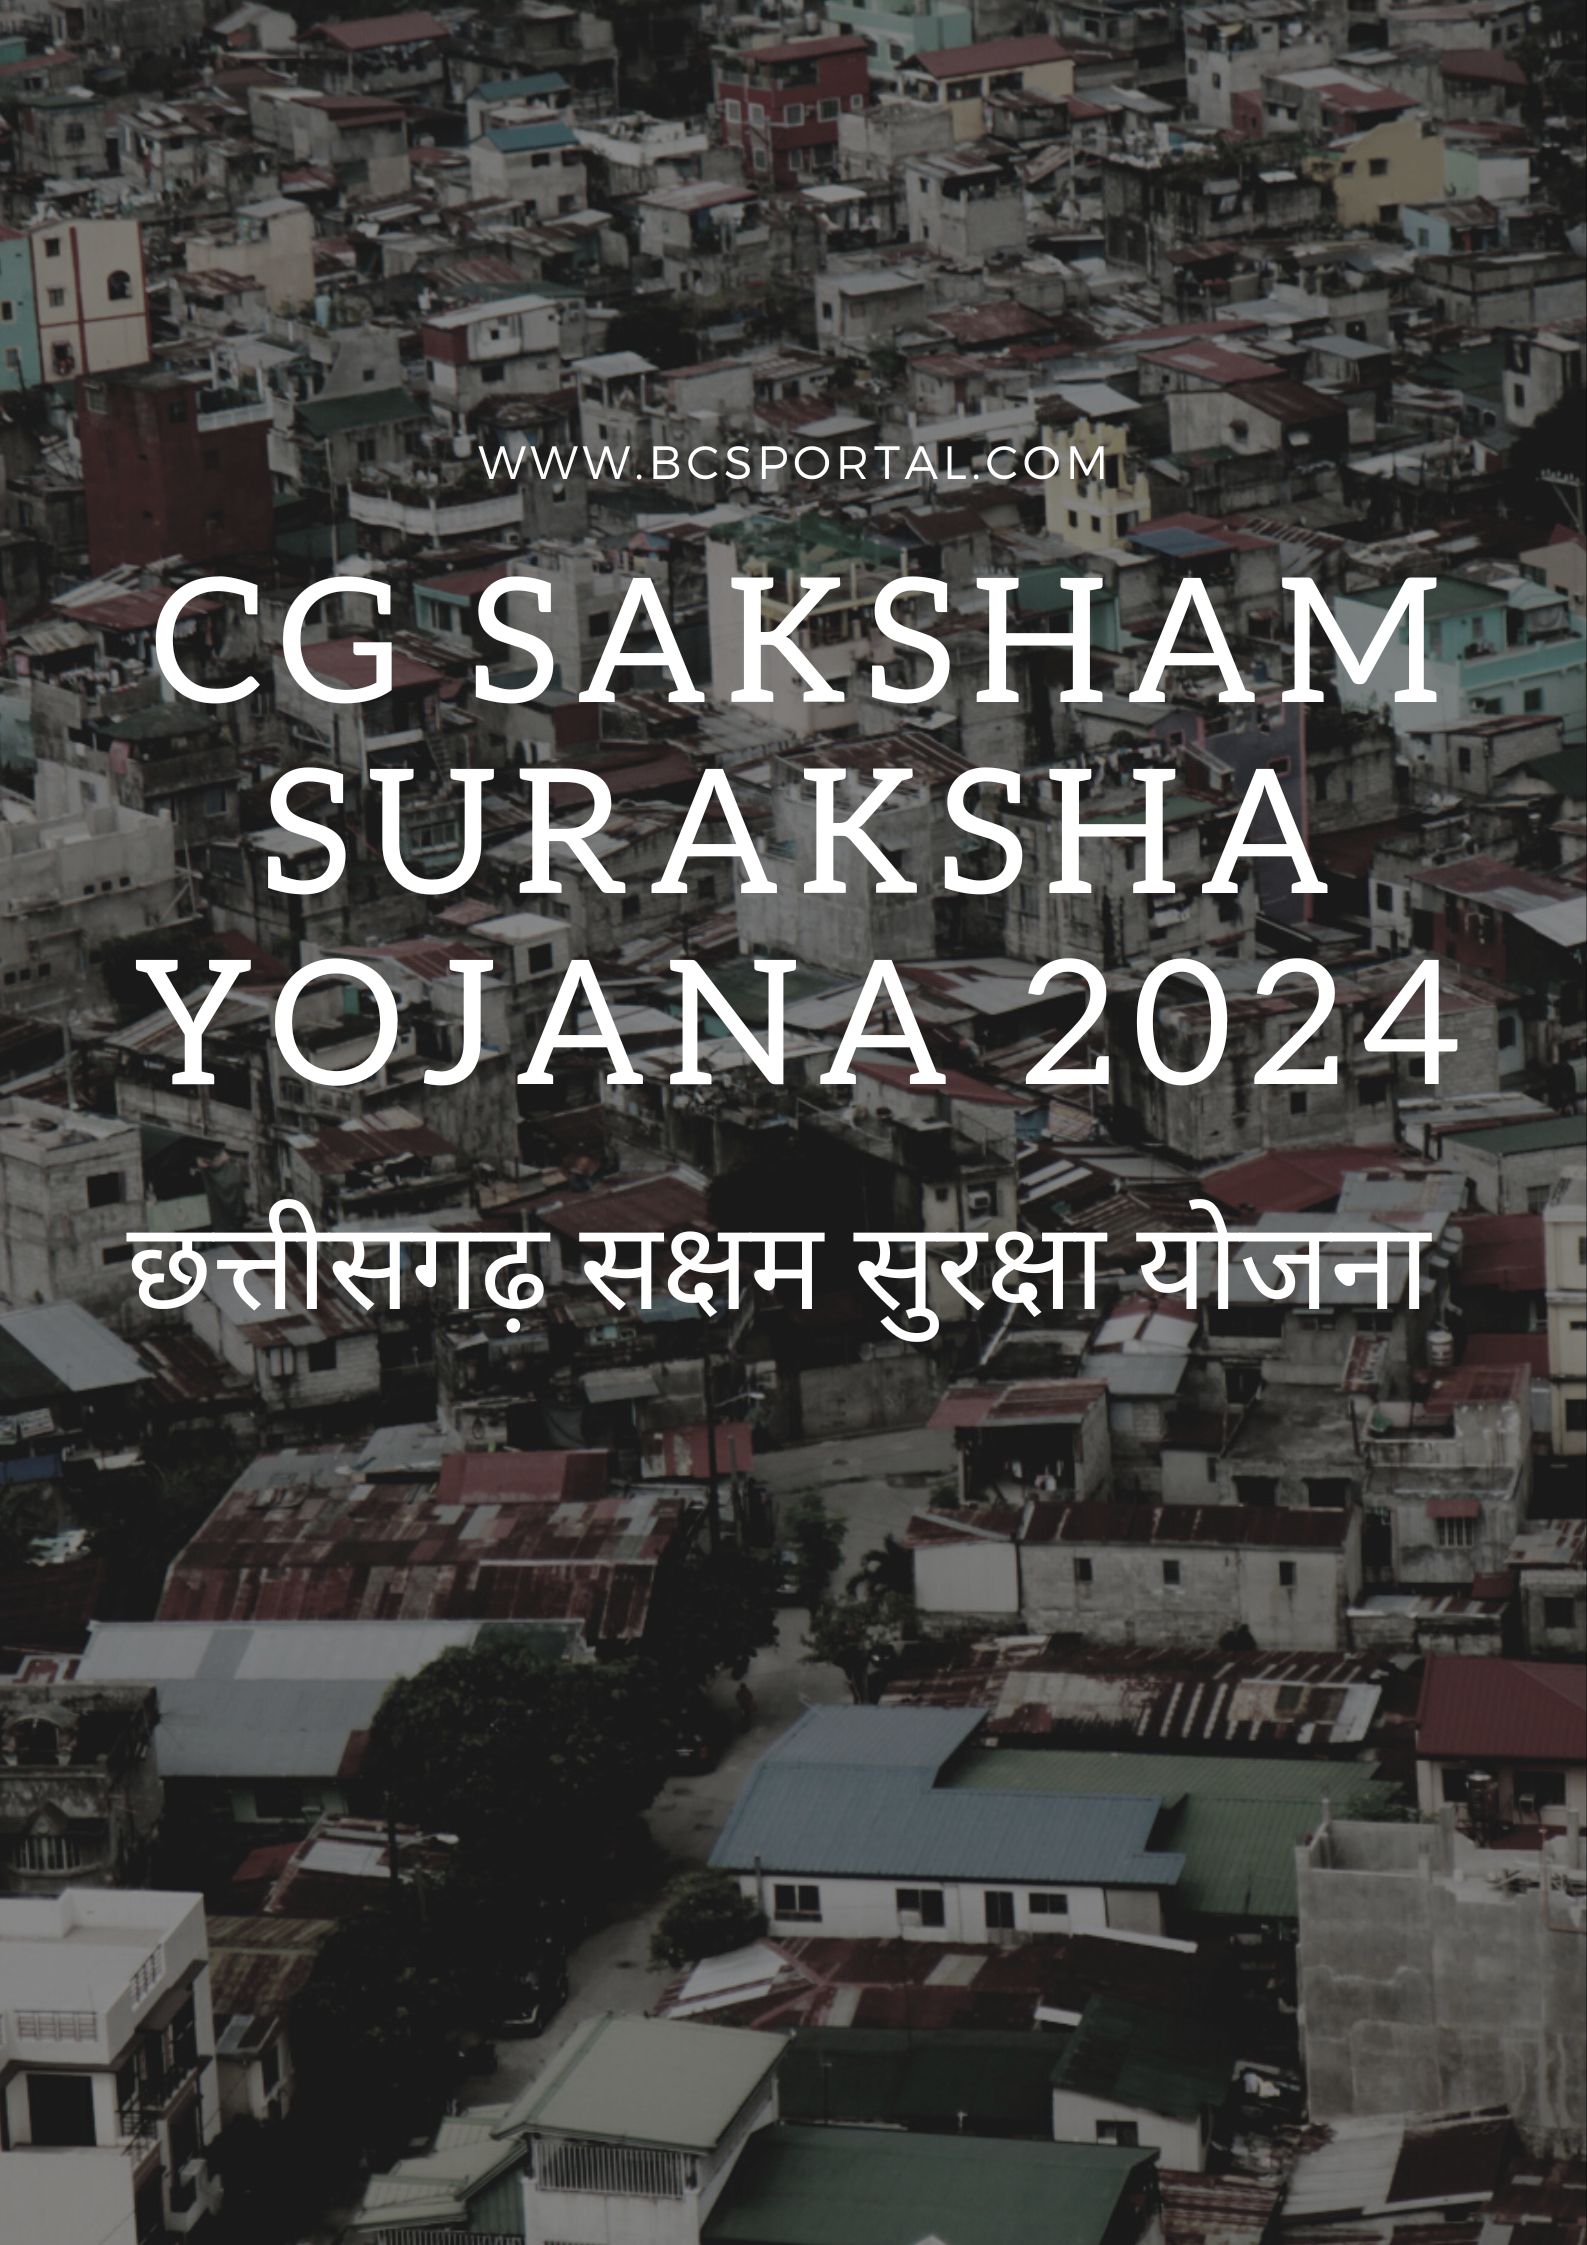 CG Saksham Suraksha Yojana 2024